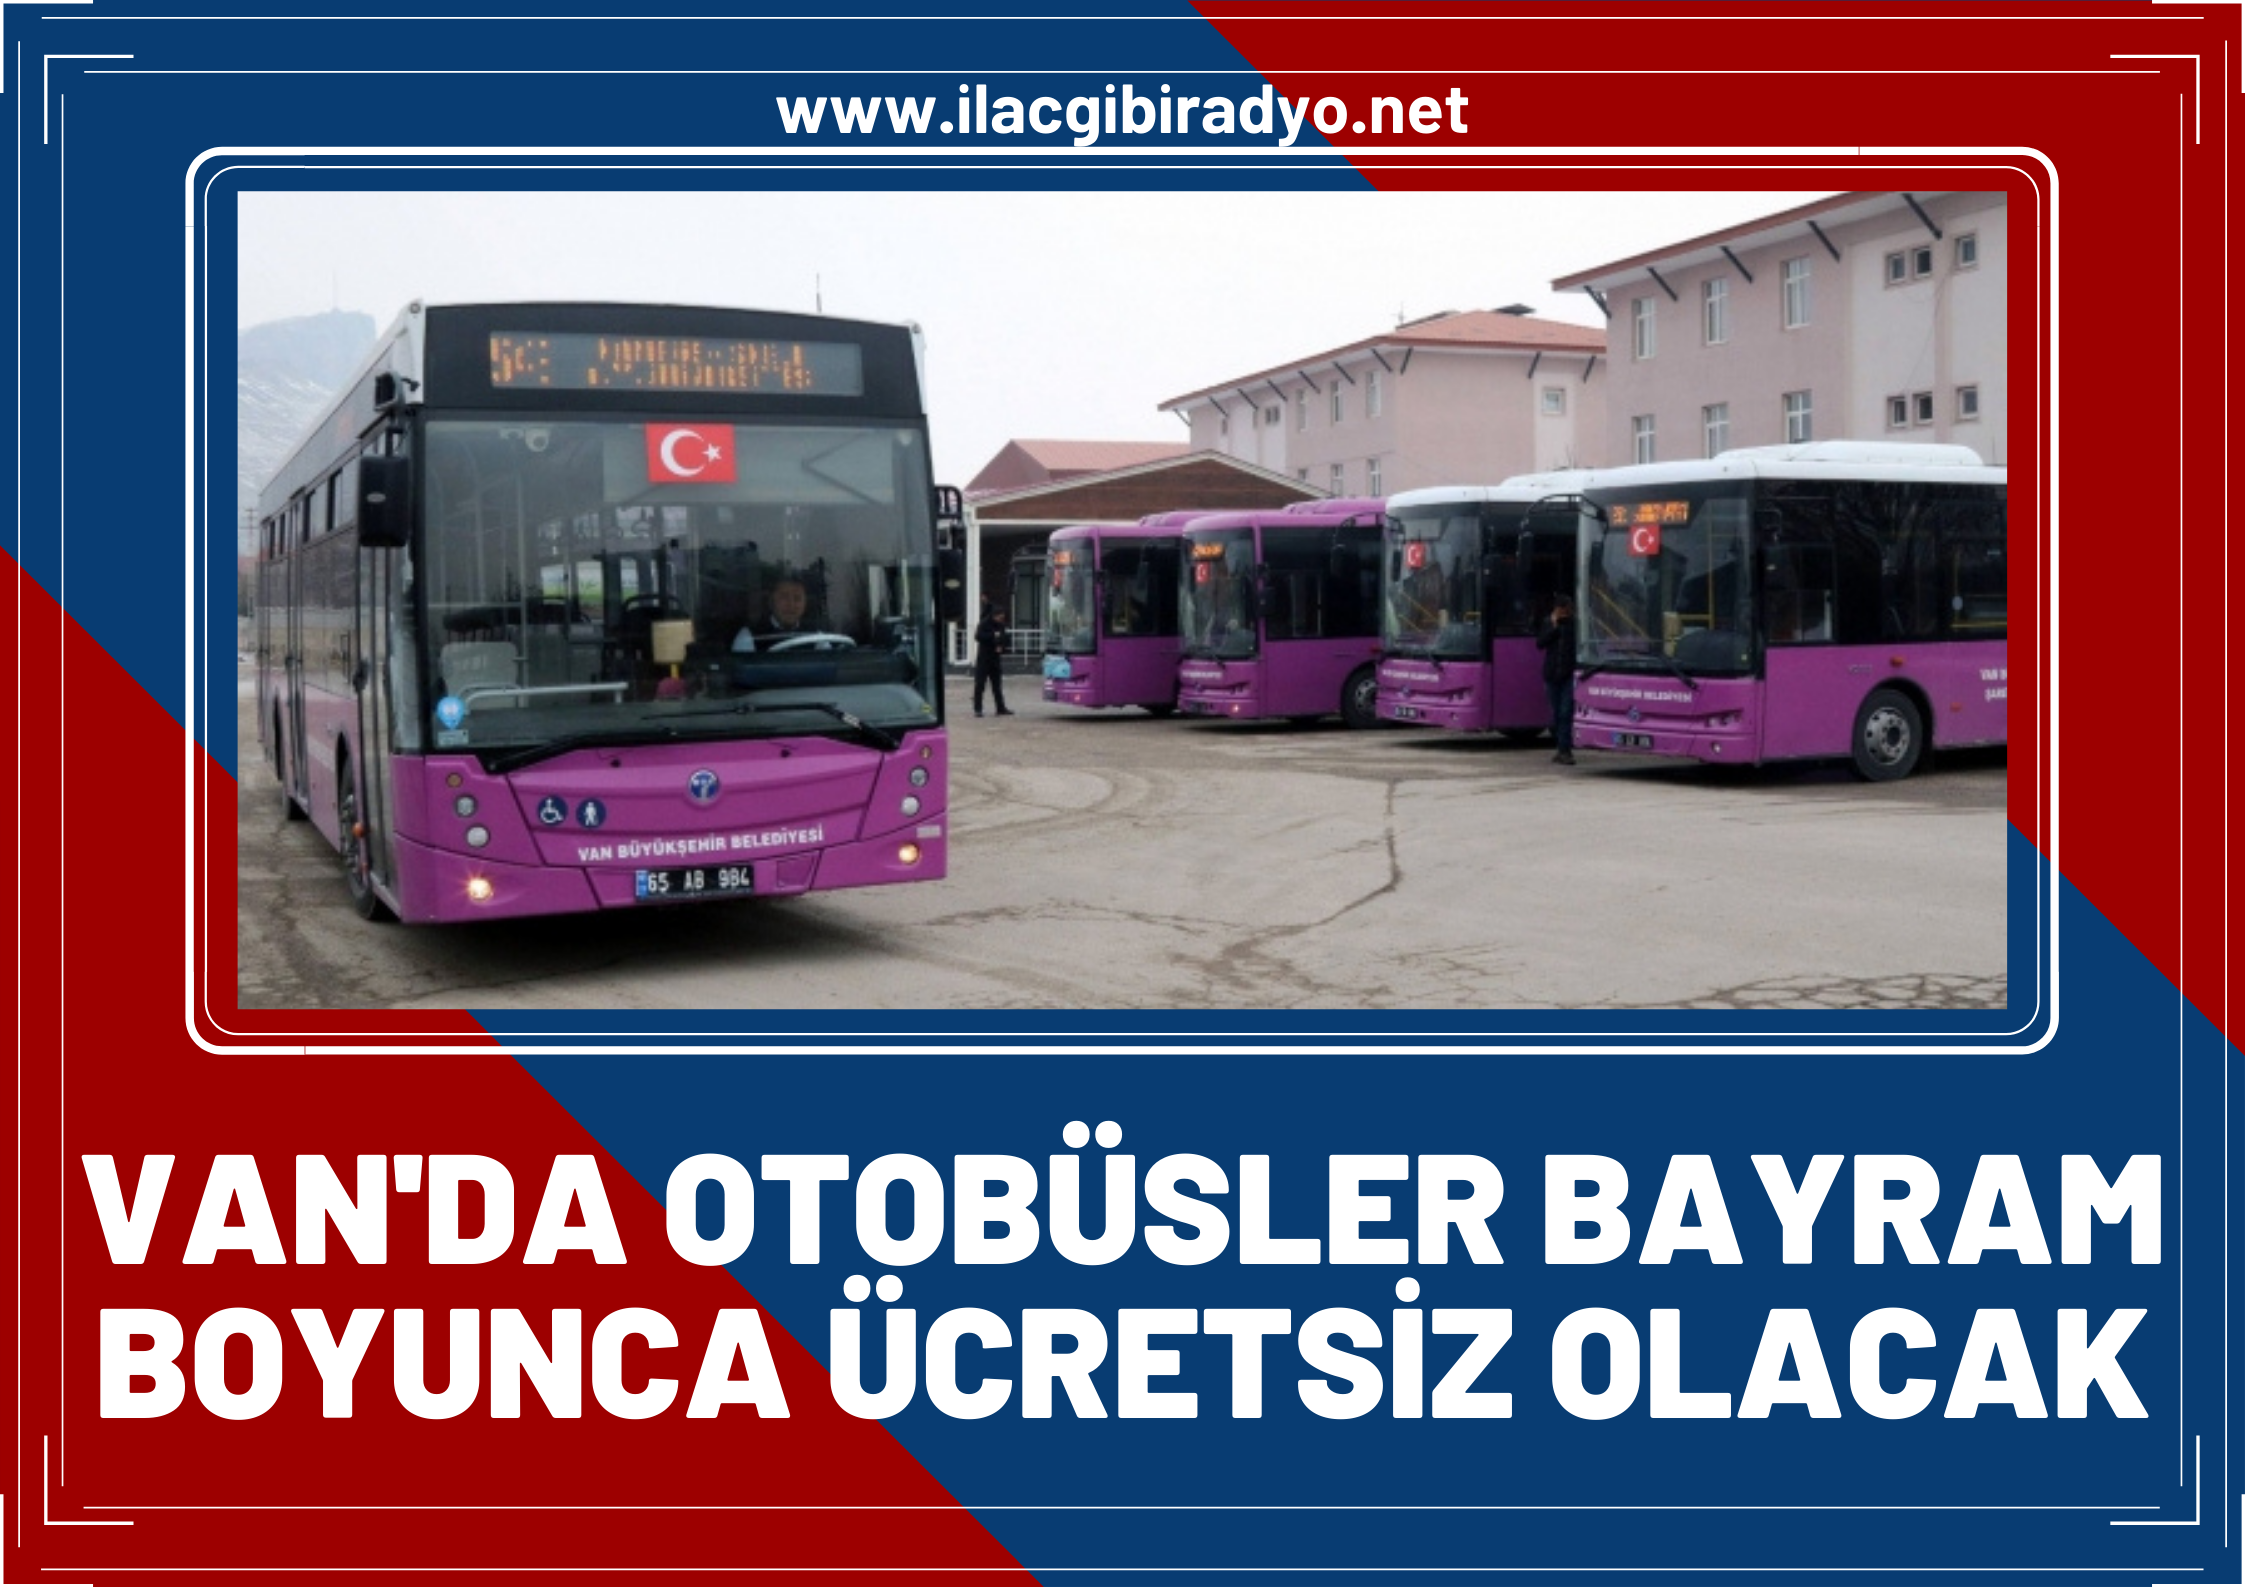 Van Büyükşehir Belediyesi duyurdu... Otobüsler bayram boyunca ücretsiz olacak!